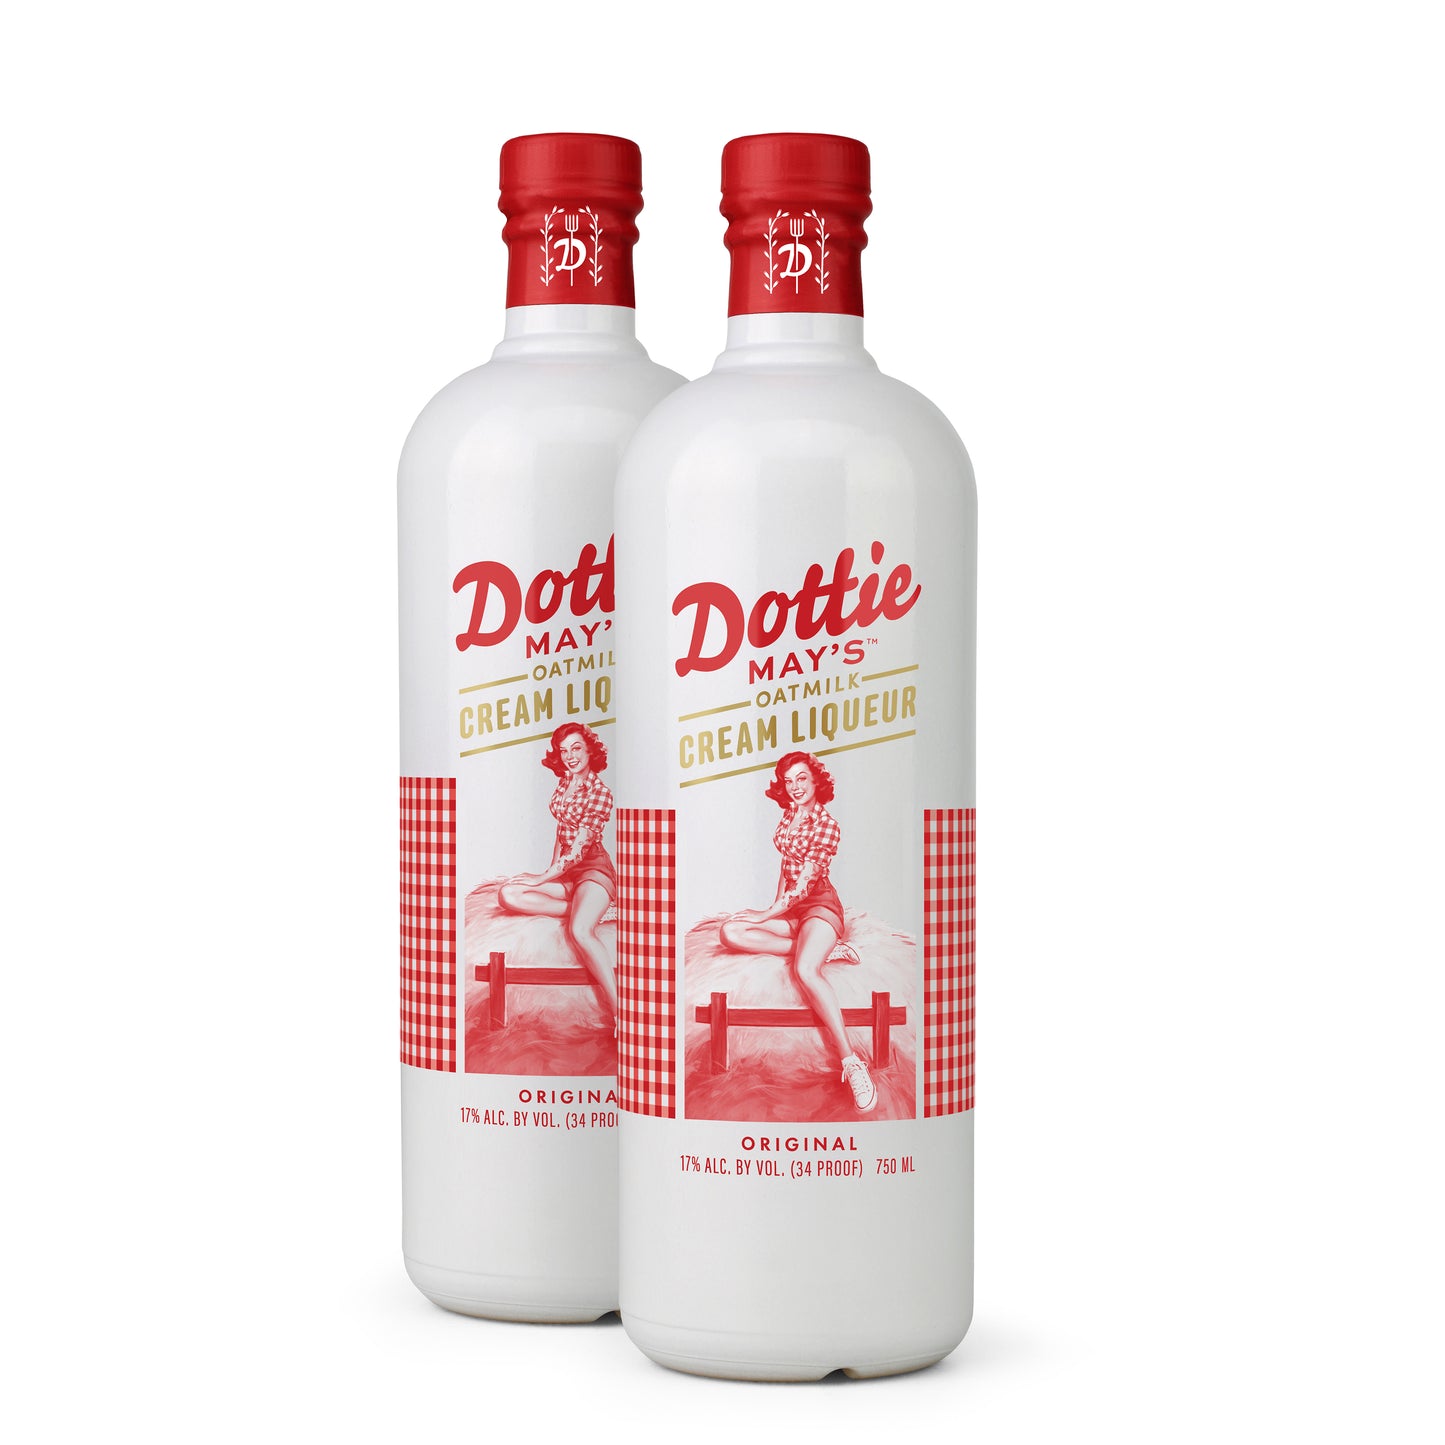 Dottie May's™ Oatmilk Cream Liqueur (2 Bottles) – Drink Dotties